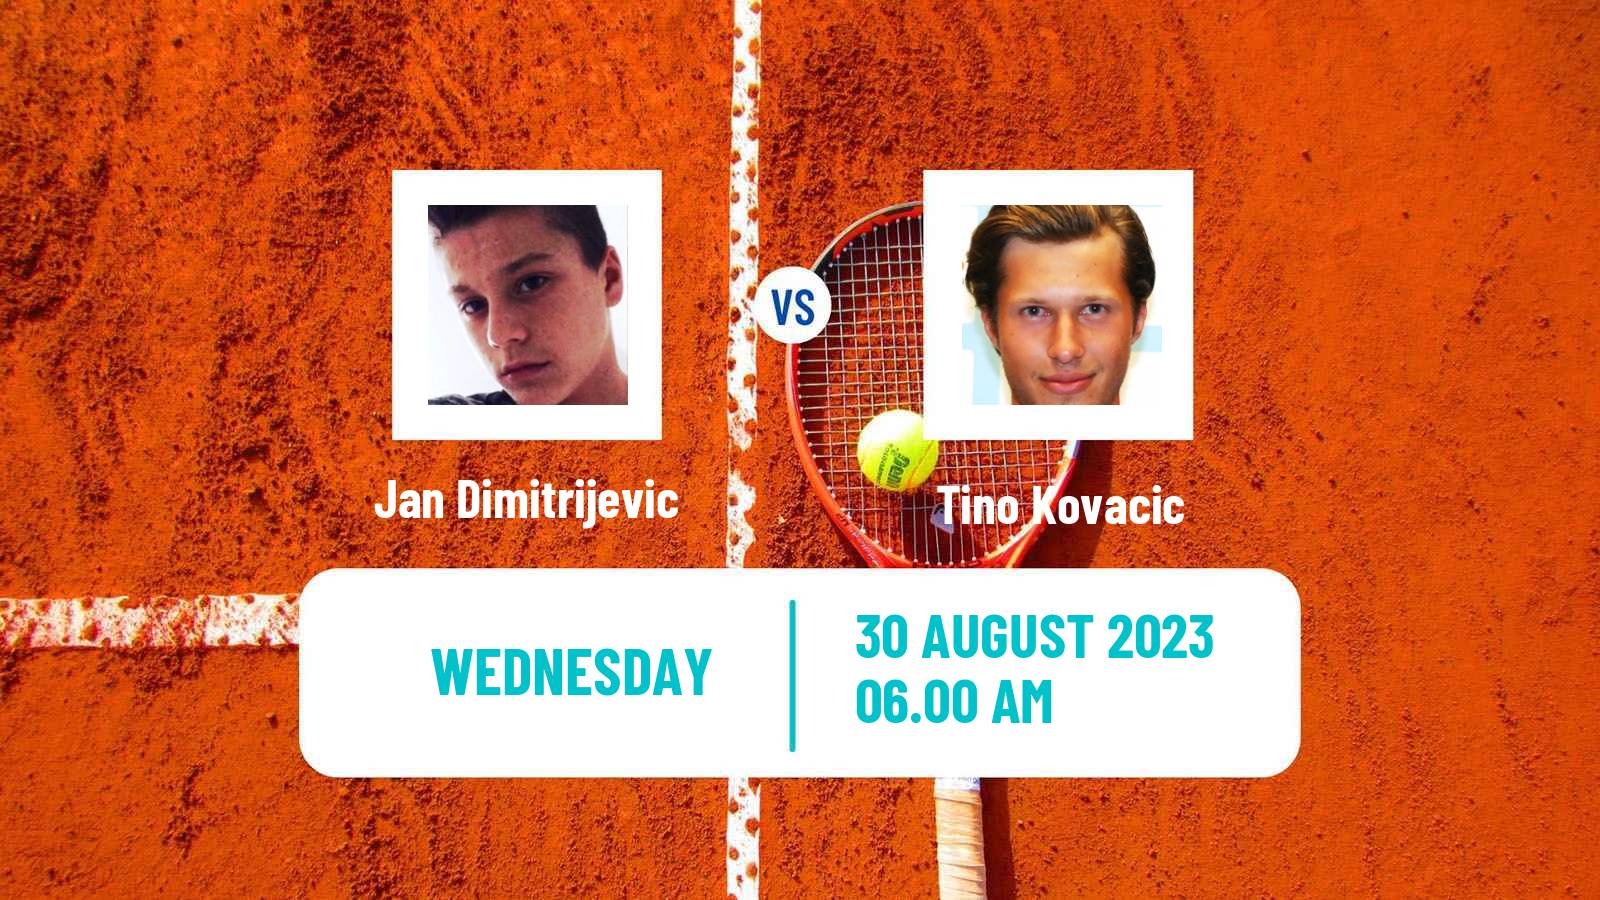 Tennis ITF M25 MarIBOr Men Jan Dimitrijevic - Tino Kovacic